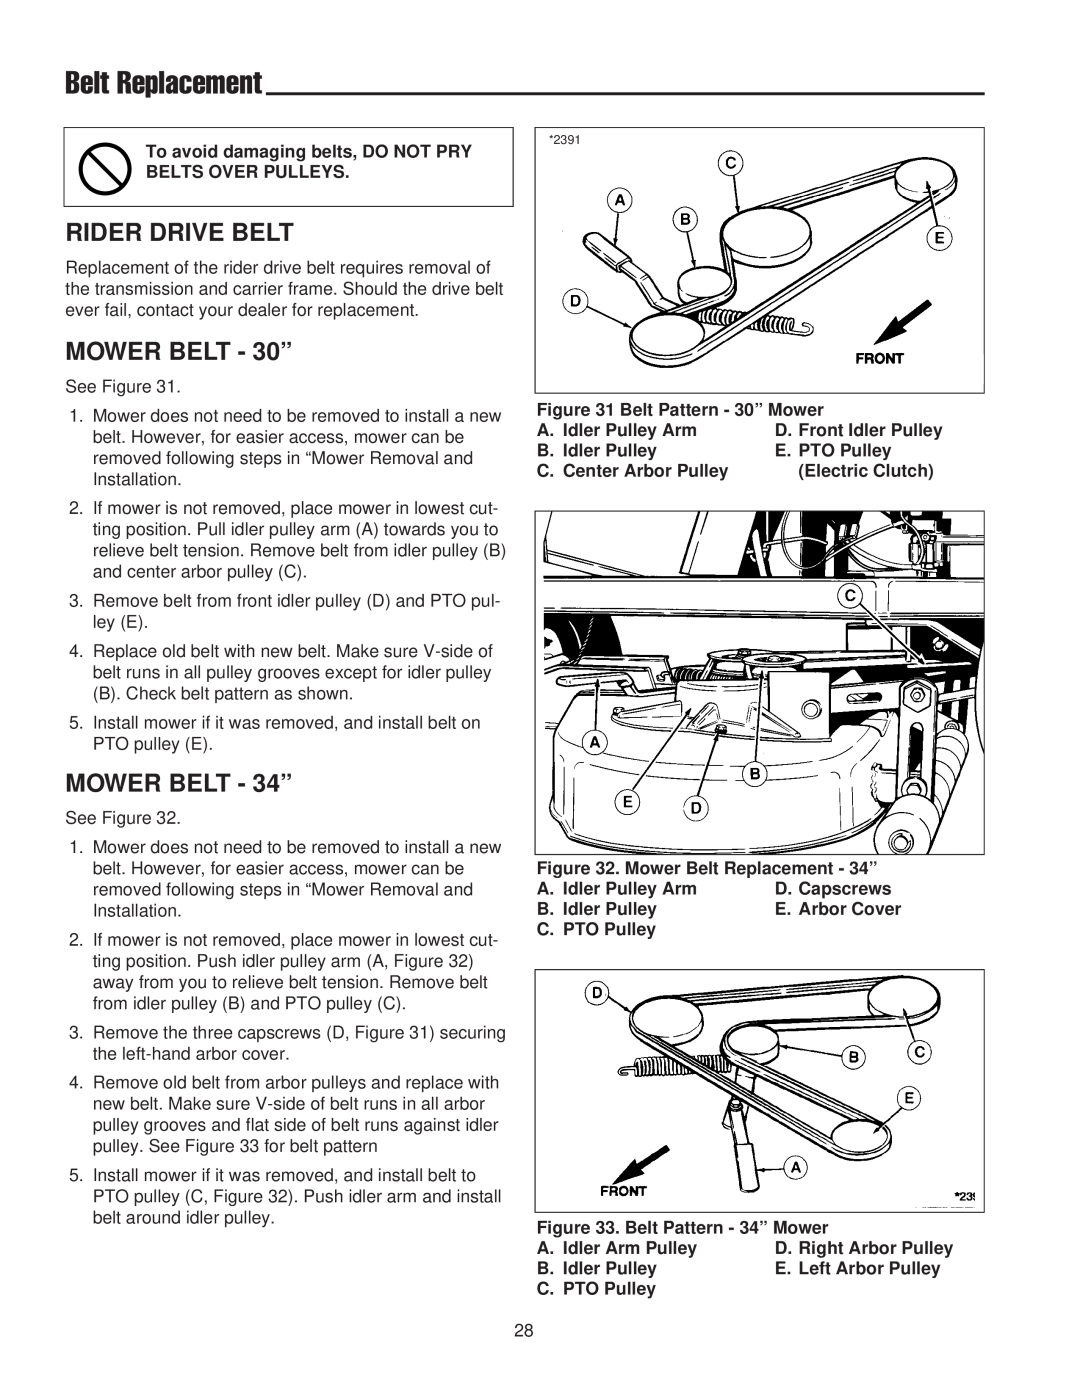 Snapper 400 / 2400 manual Belt Replacement, Rider Drive Belt, MOWER BELT - 30”, MOWER BELT - 34” 